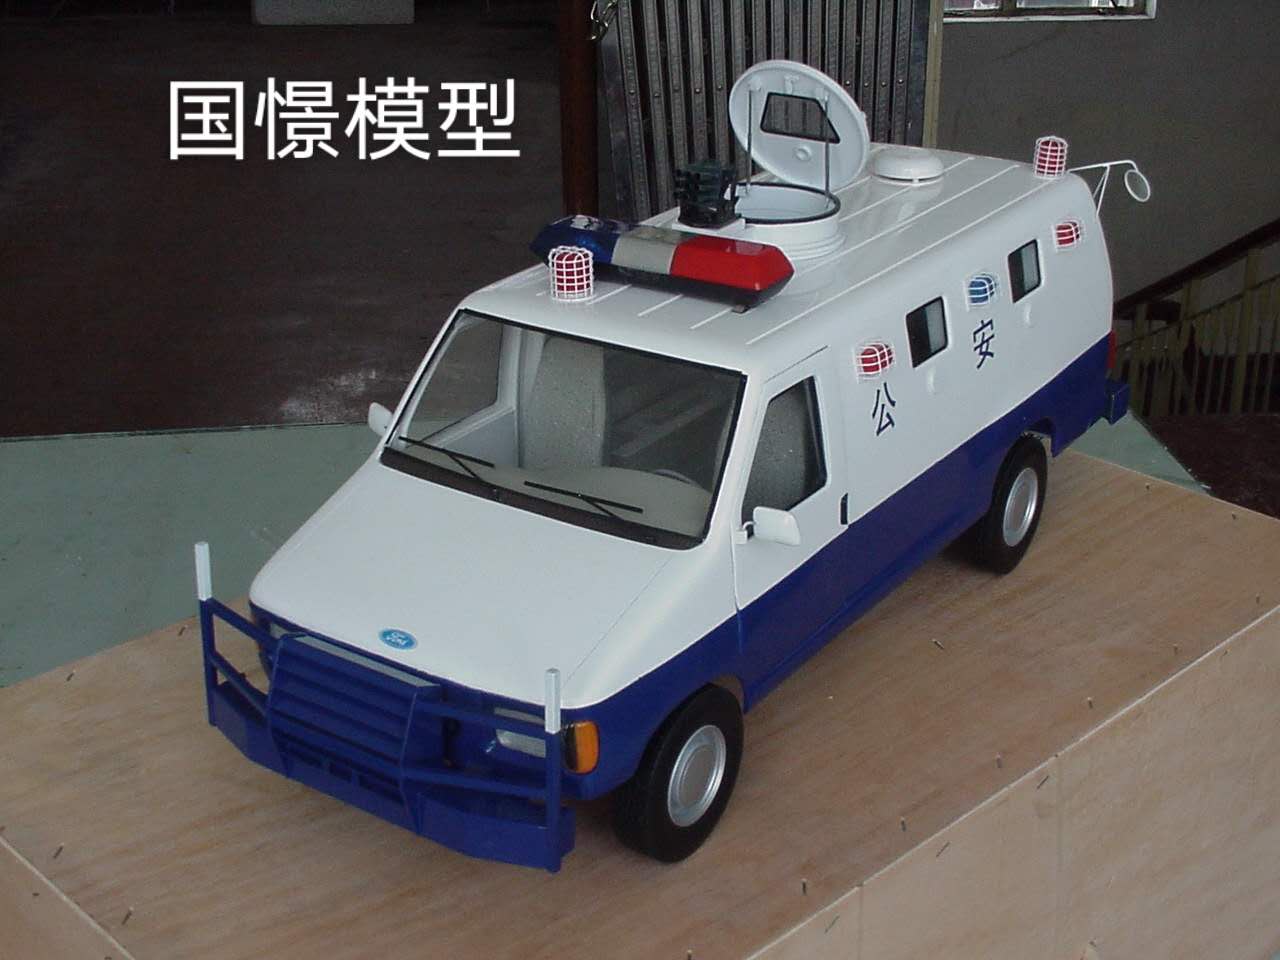 嫩江市车辆模型